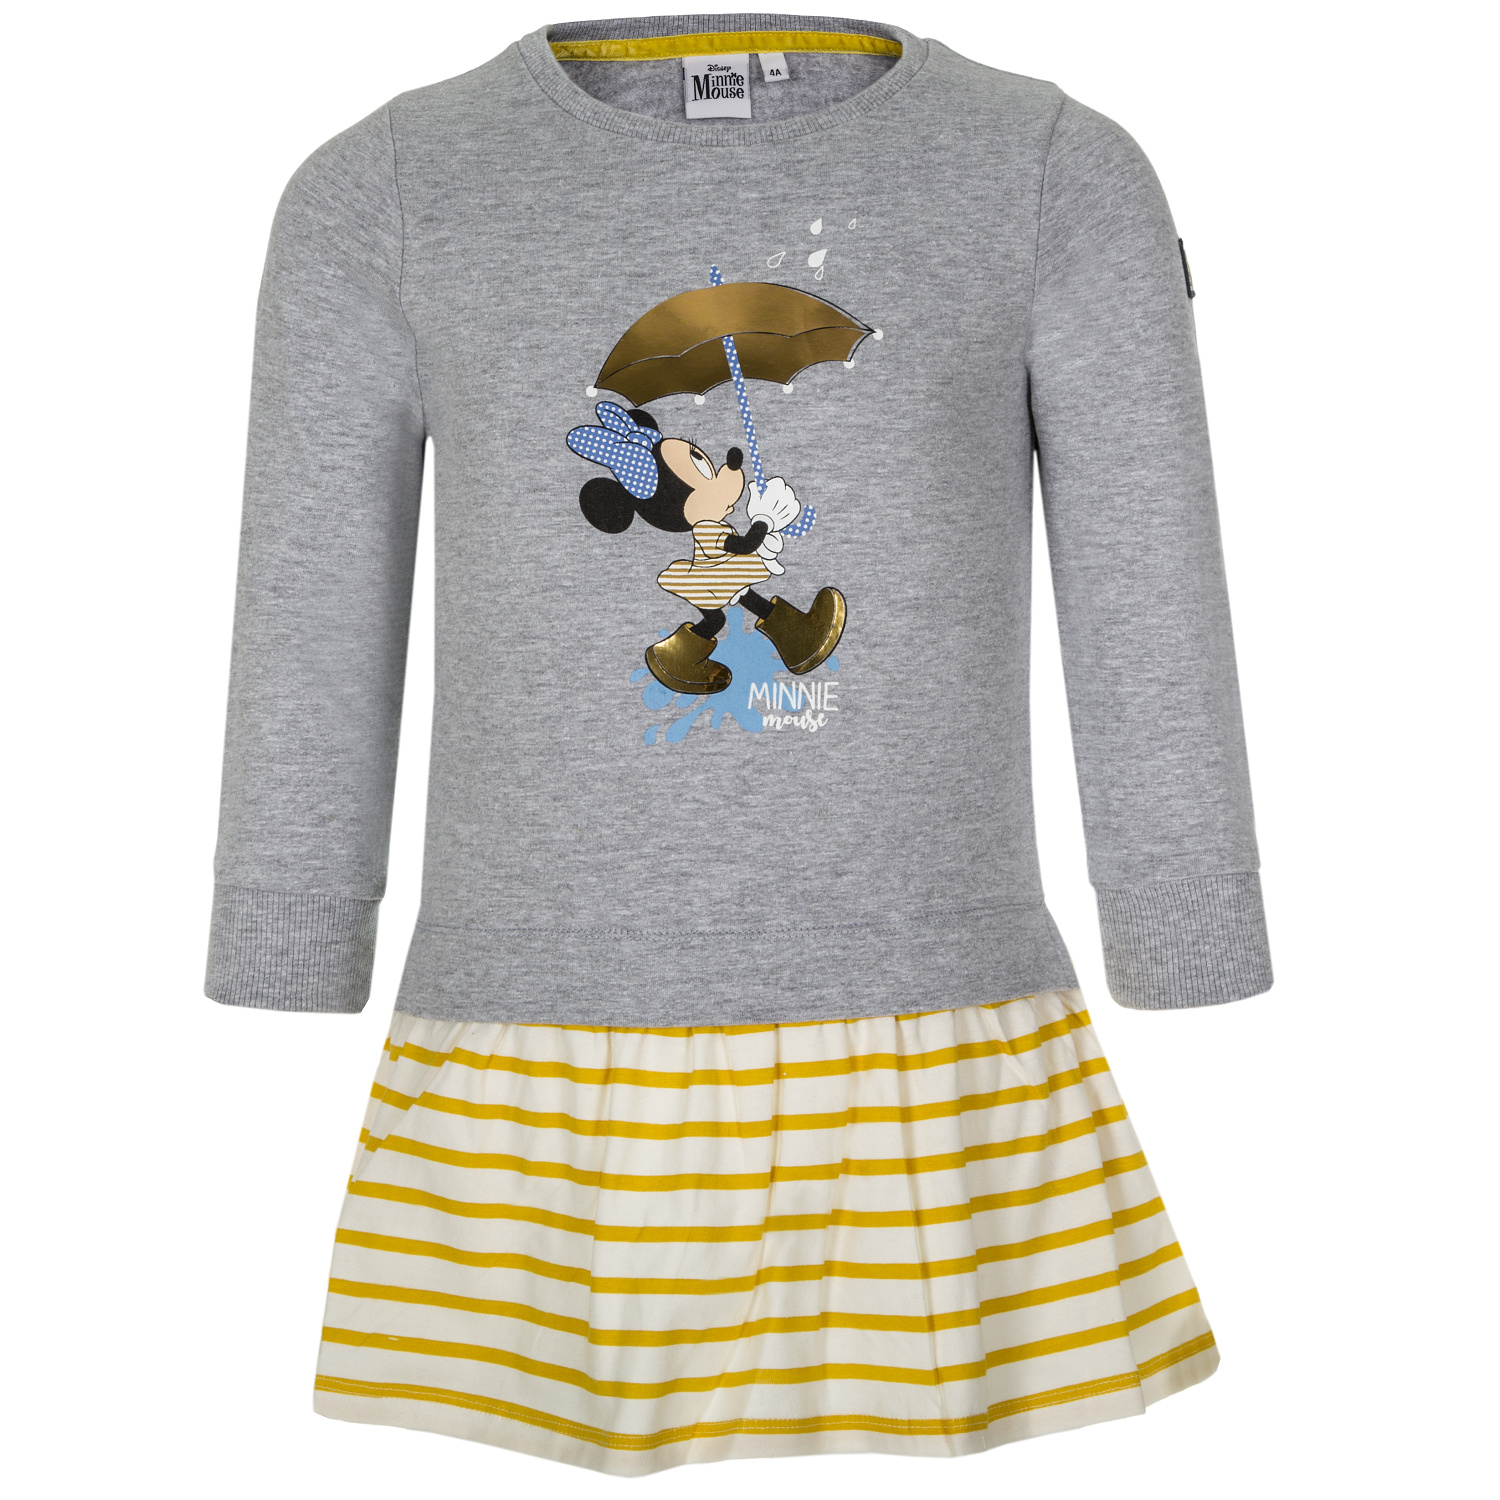 Minnie Mouse - licence Dívčí šaty - Minnie Mouse VH1078, světle šedý melír Barva: Šedá, Velikost: 104